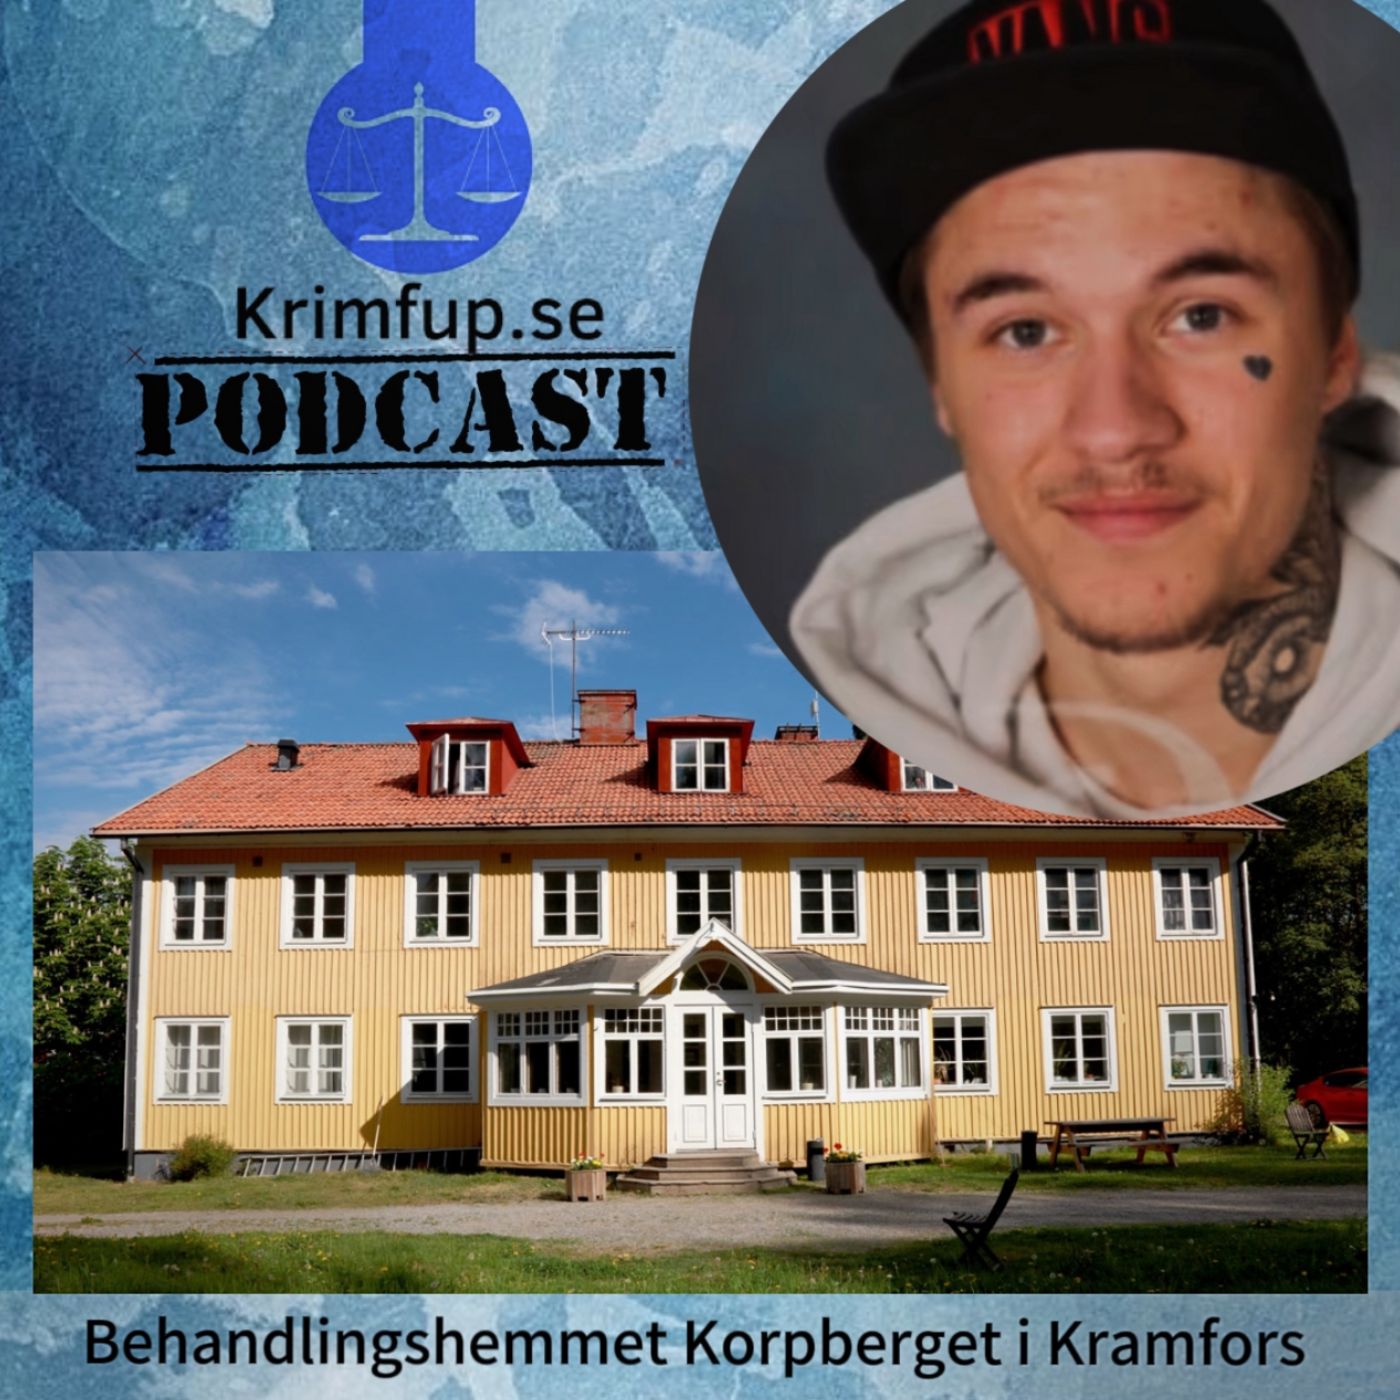 Lars Karlsson - Tilltalad - Melvin, 19 år dog på Korpbergets behandlingshem i Kramfors